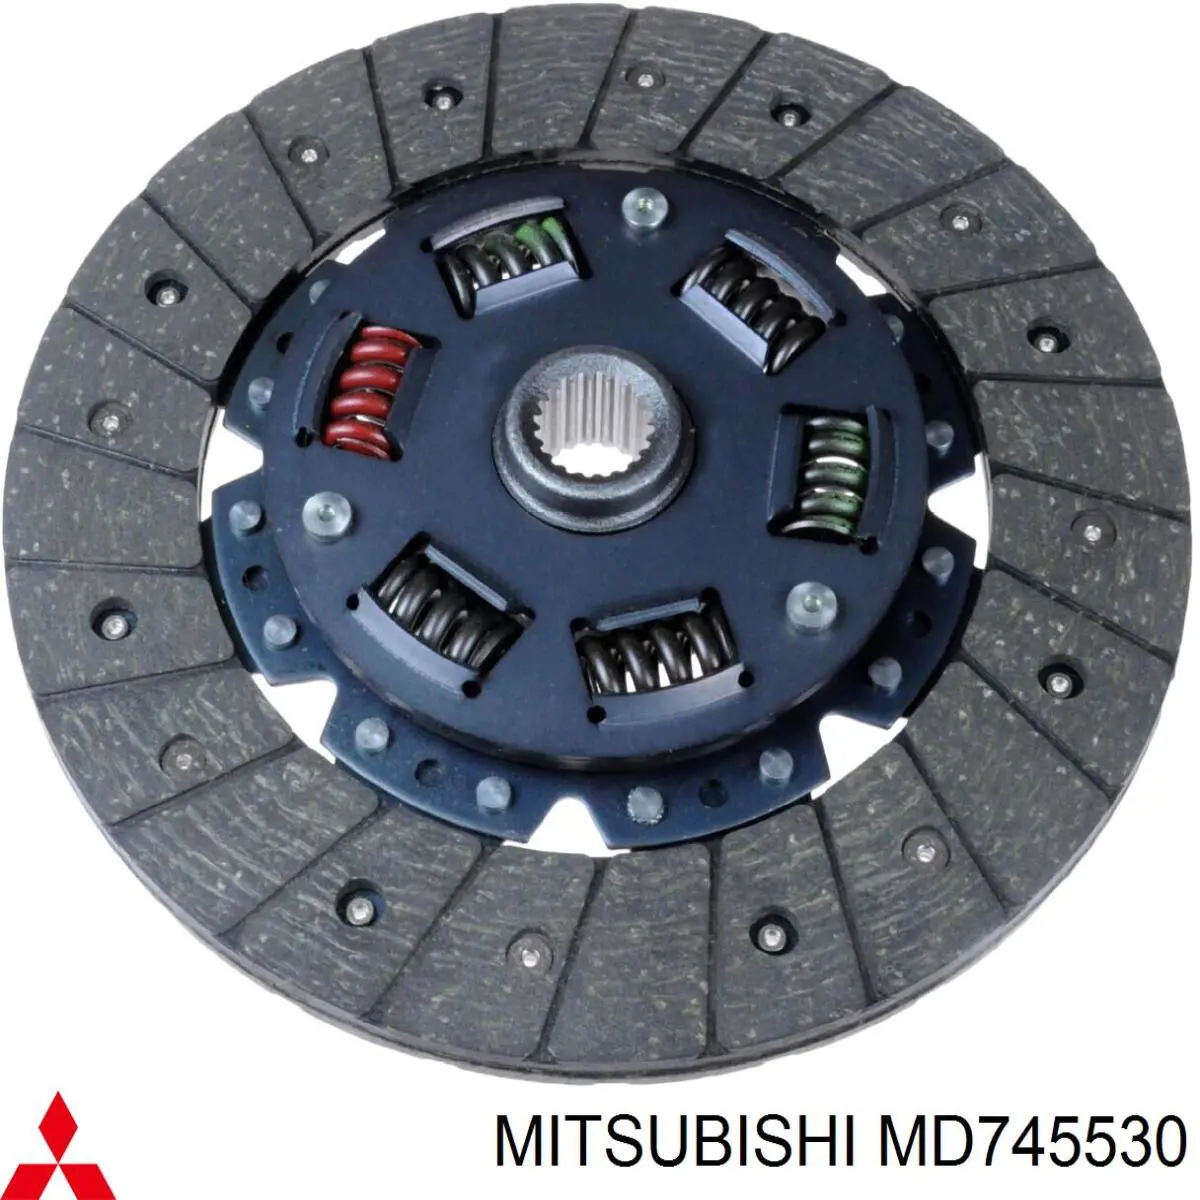 MD745530 Mitsubishi disco de embrague